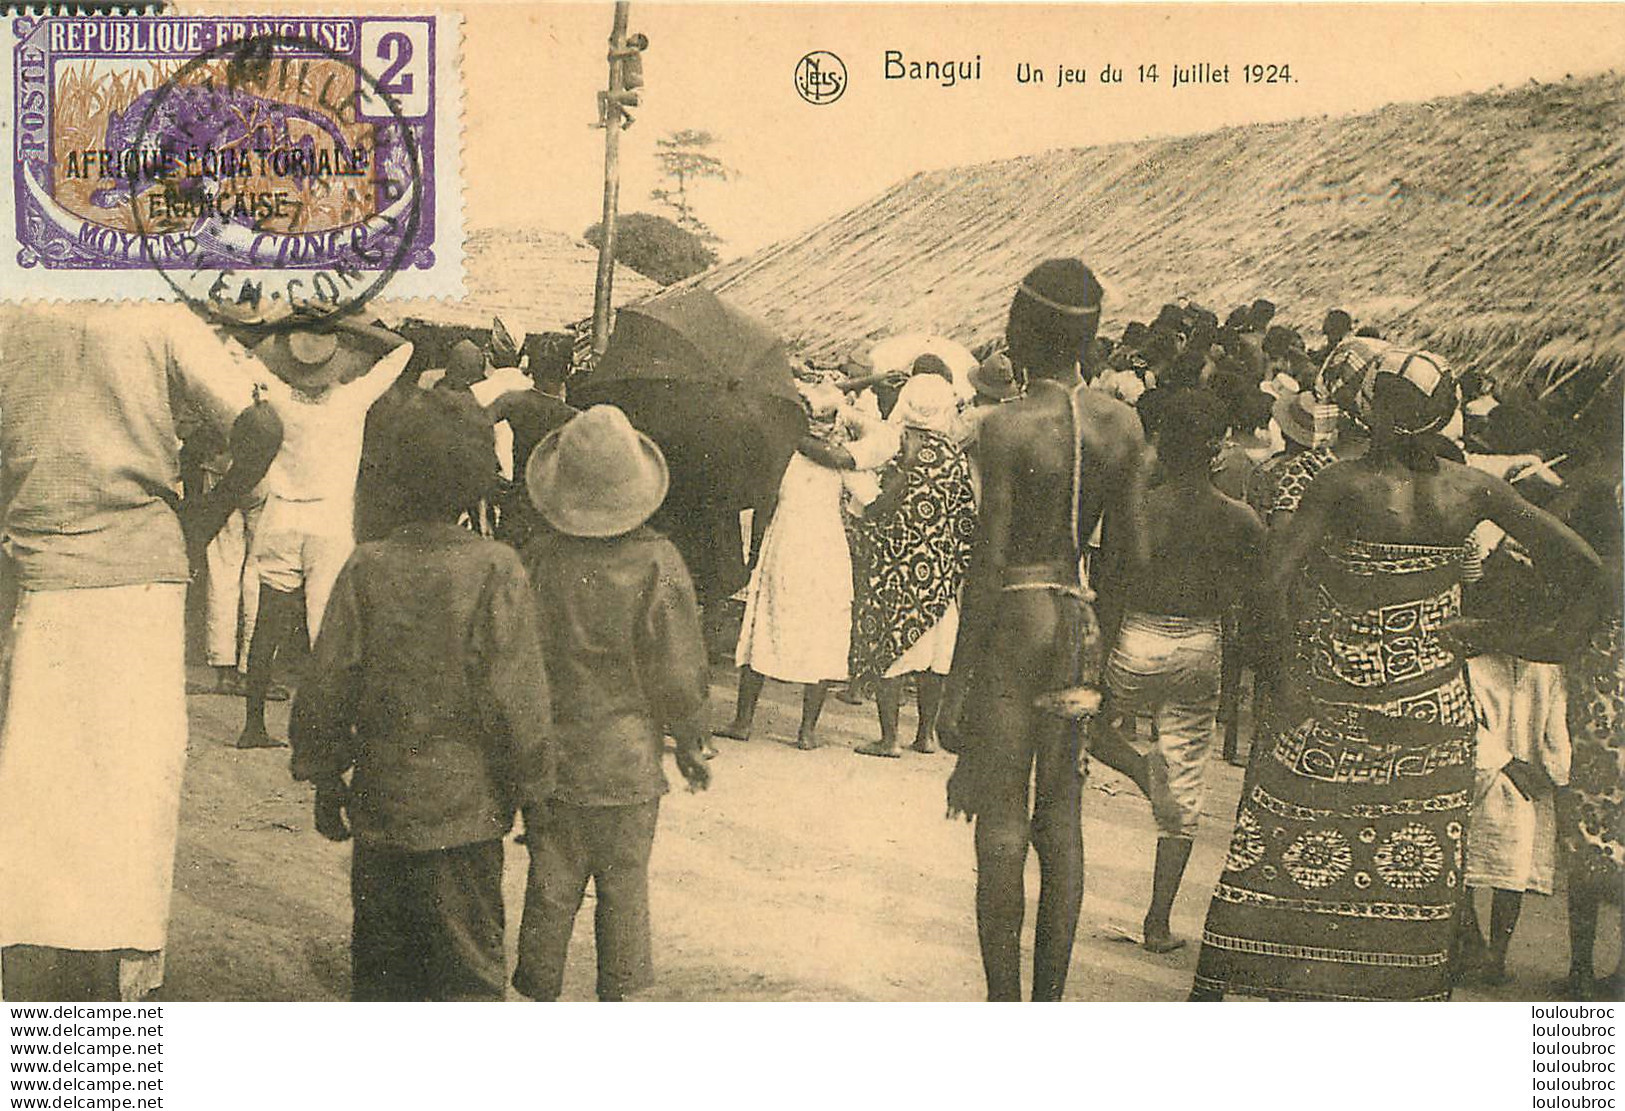 BANGUI UN JEU DU 14 JUILLET 1924  EDITION NELS - Repubblica Centroafricana